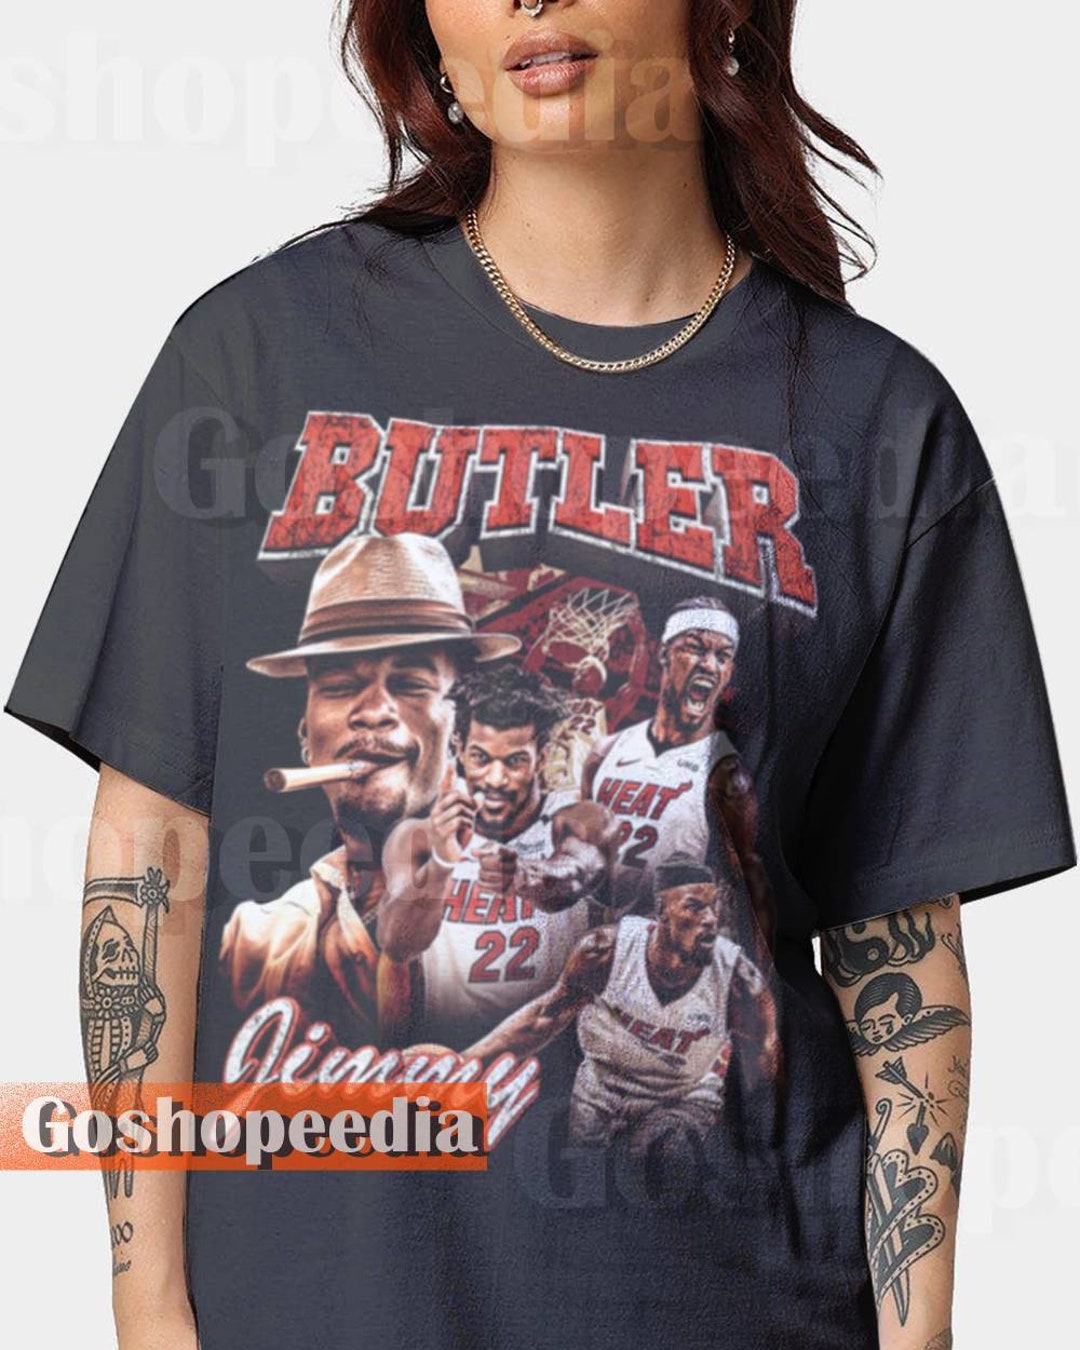 Jimmy Butler Vintage 90s T-Shirt